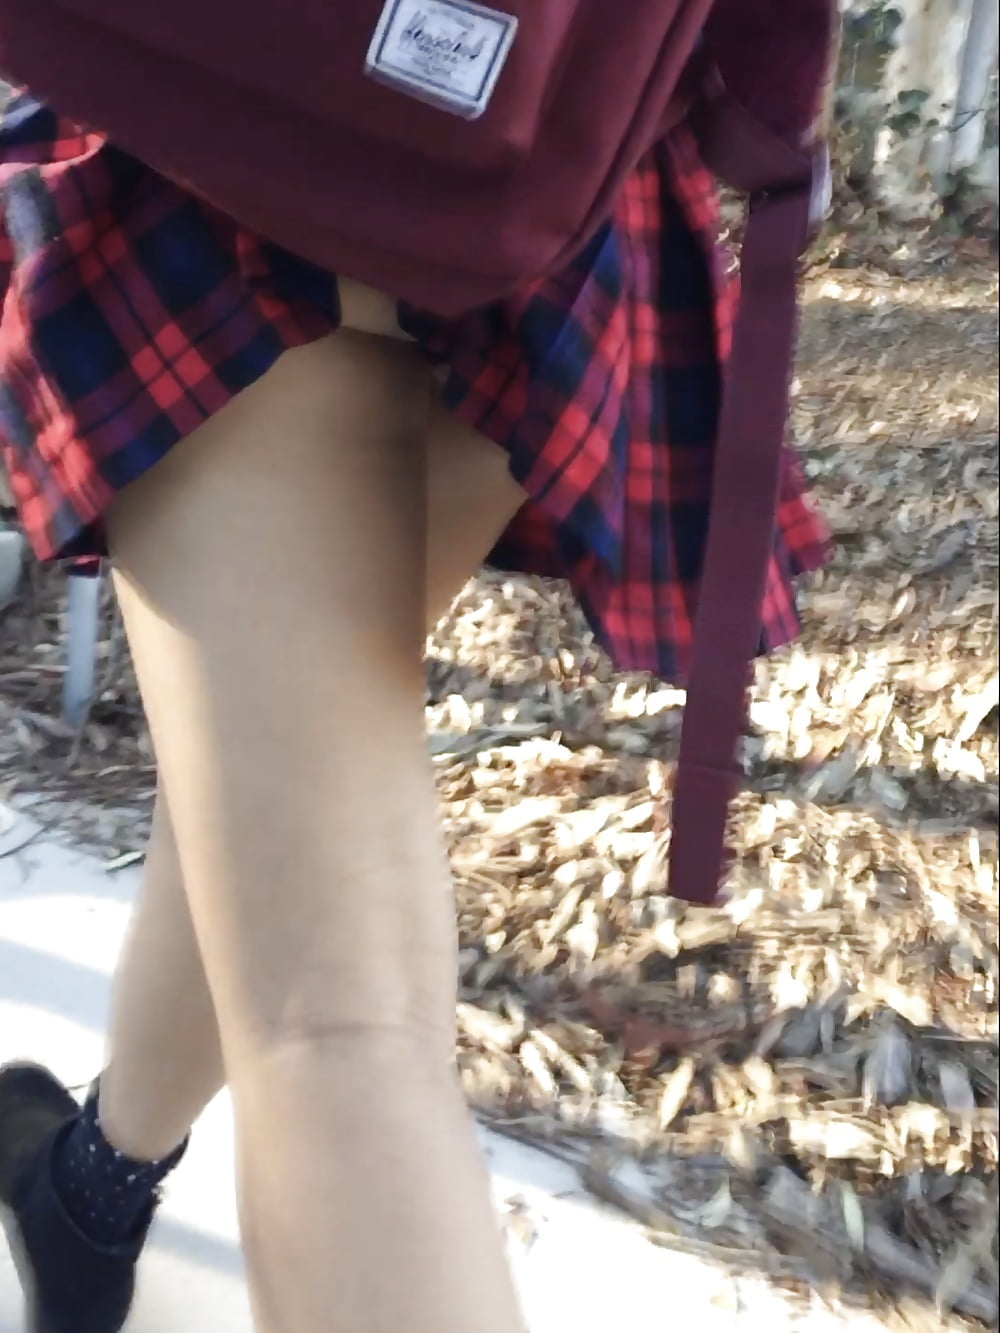 Skirt caught on backpack (6/6)